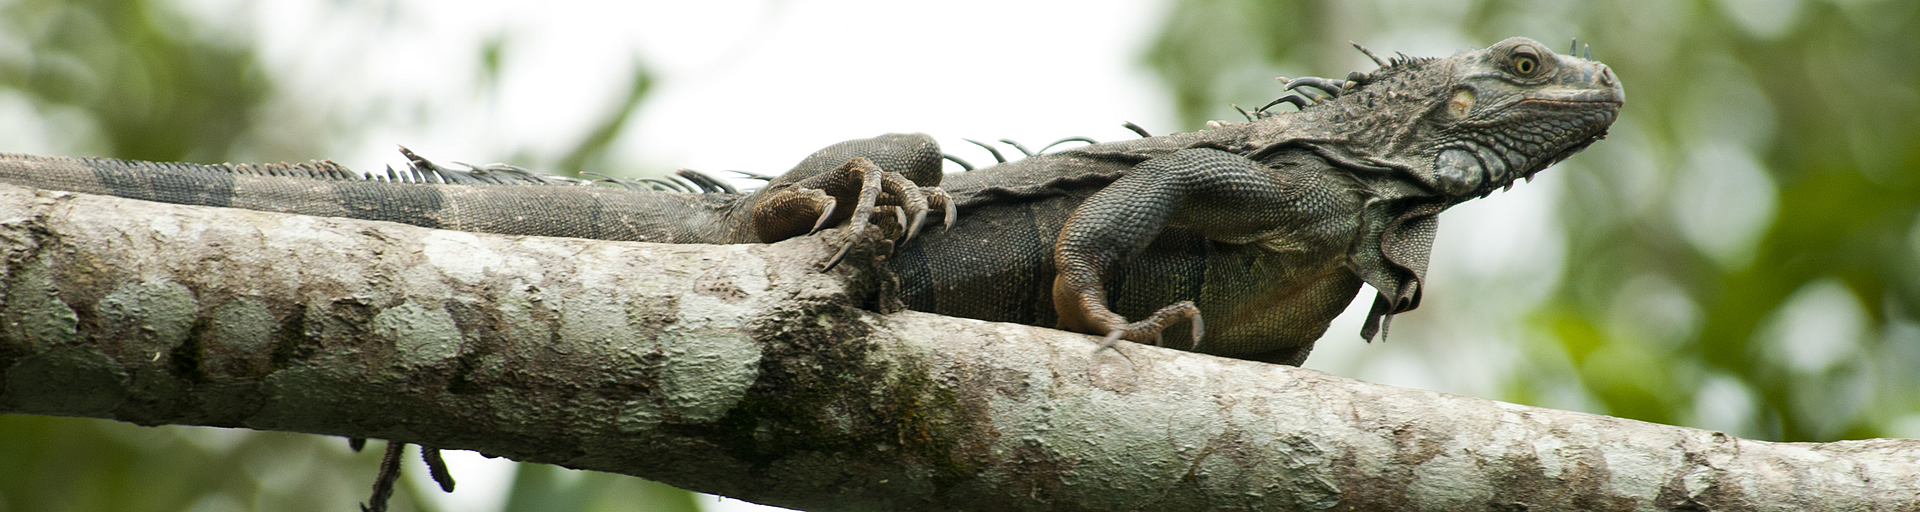 Iguana in a Tree